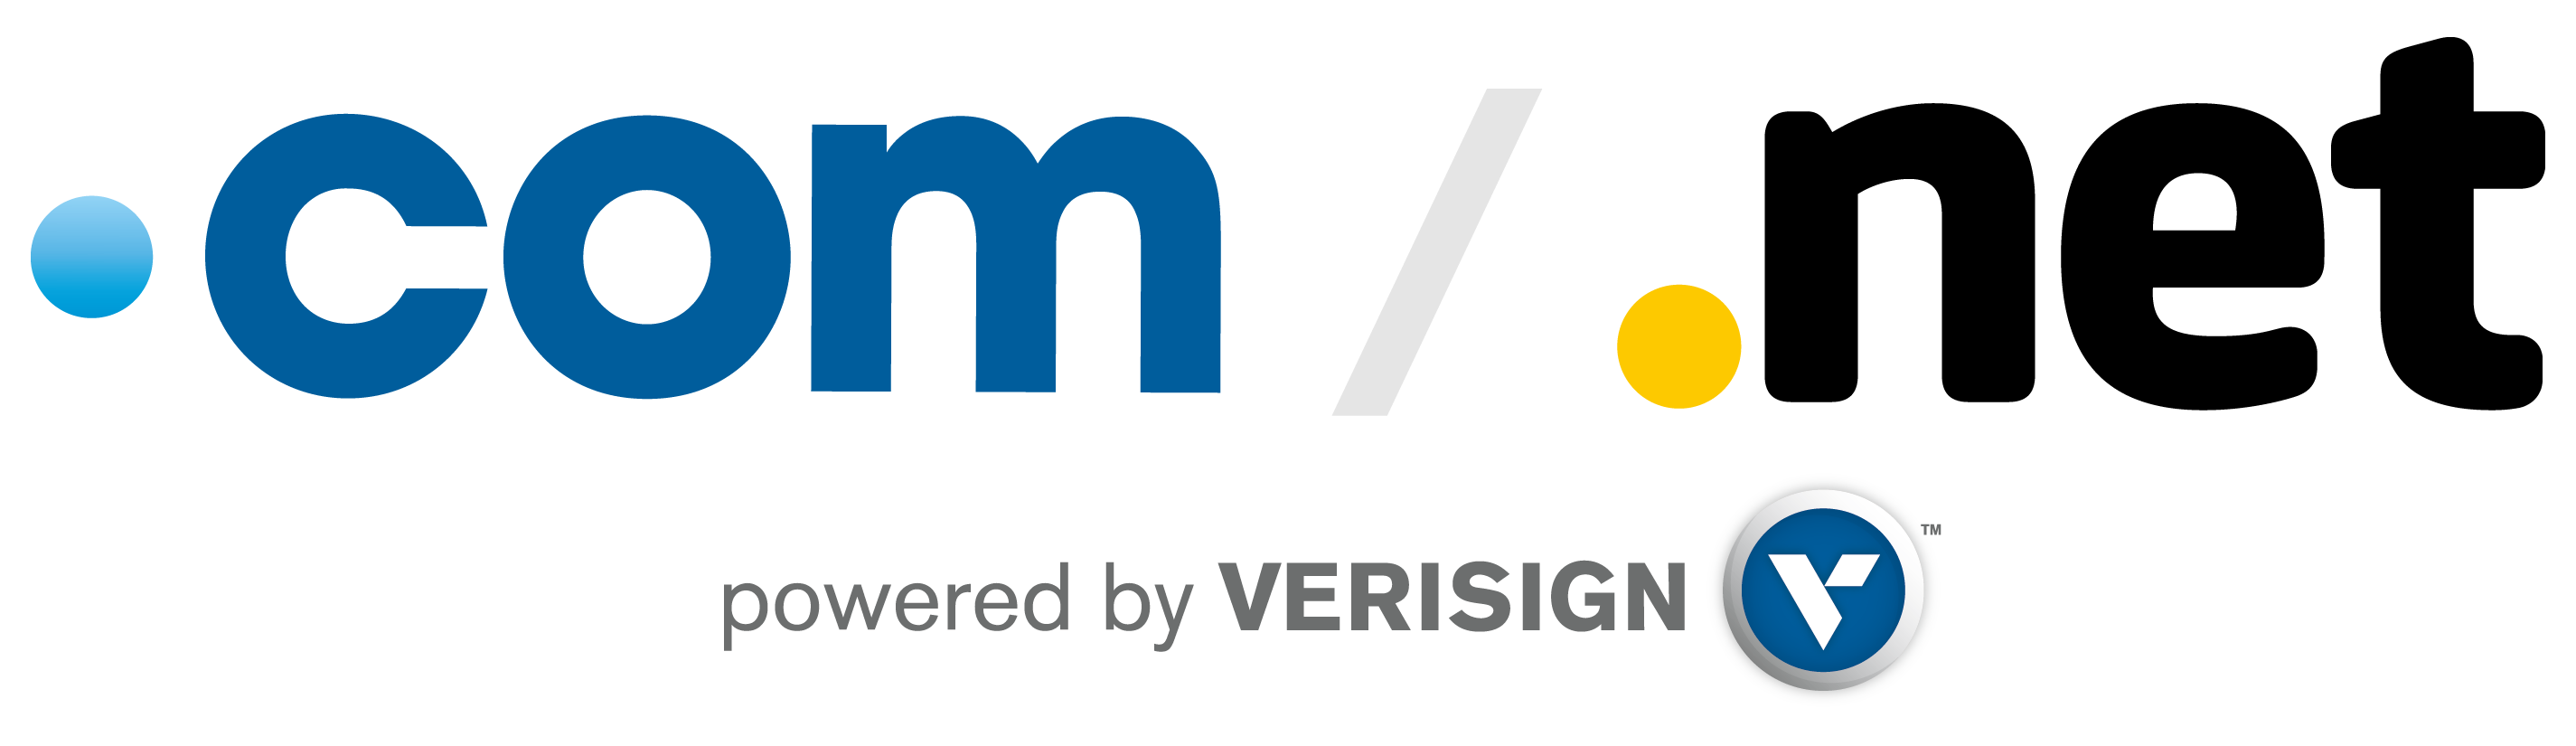 verisign.com